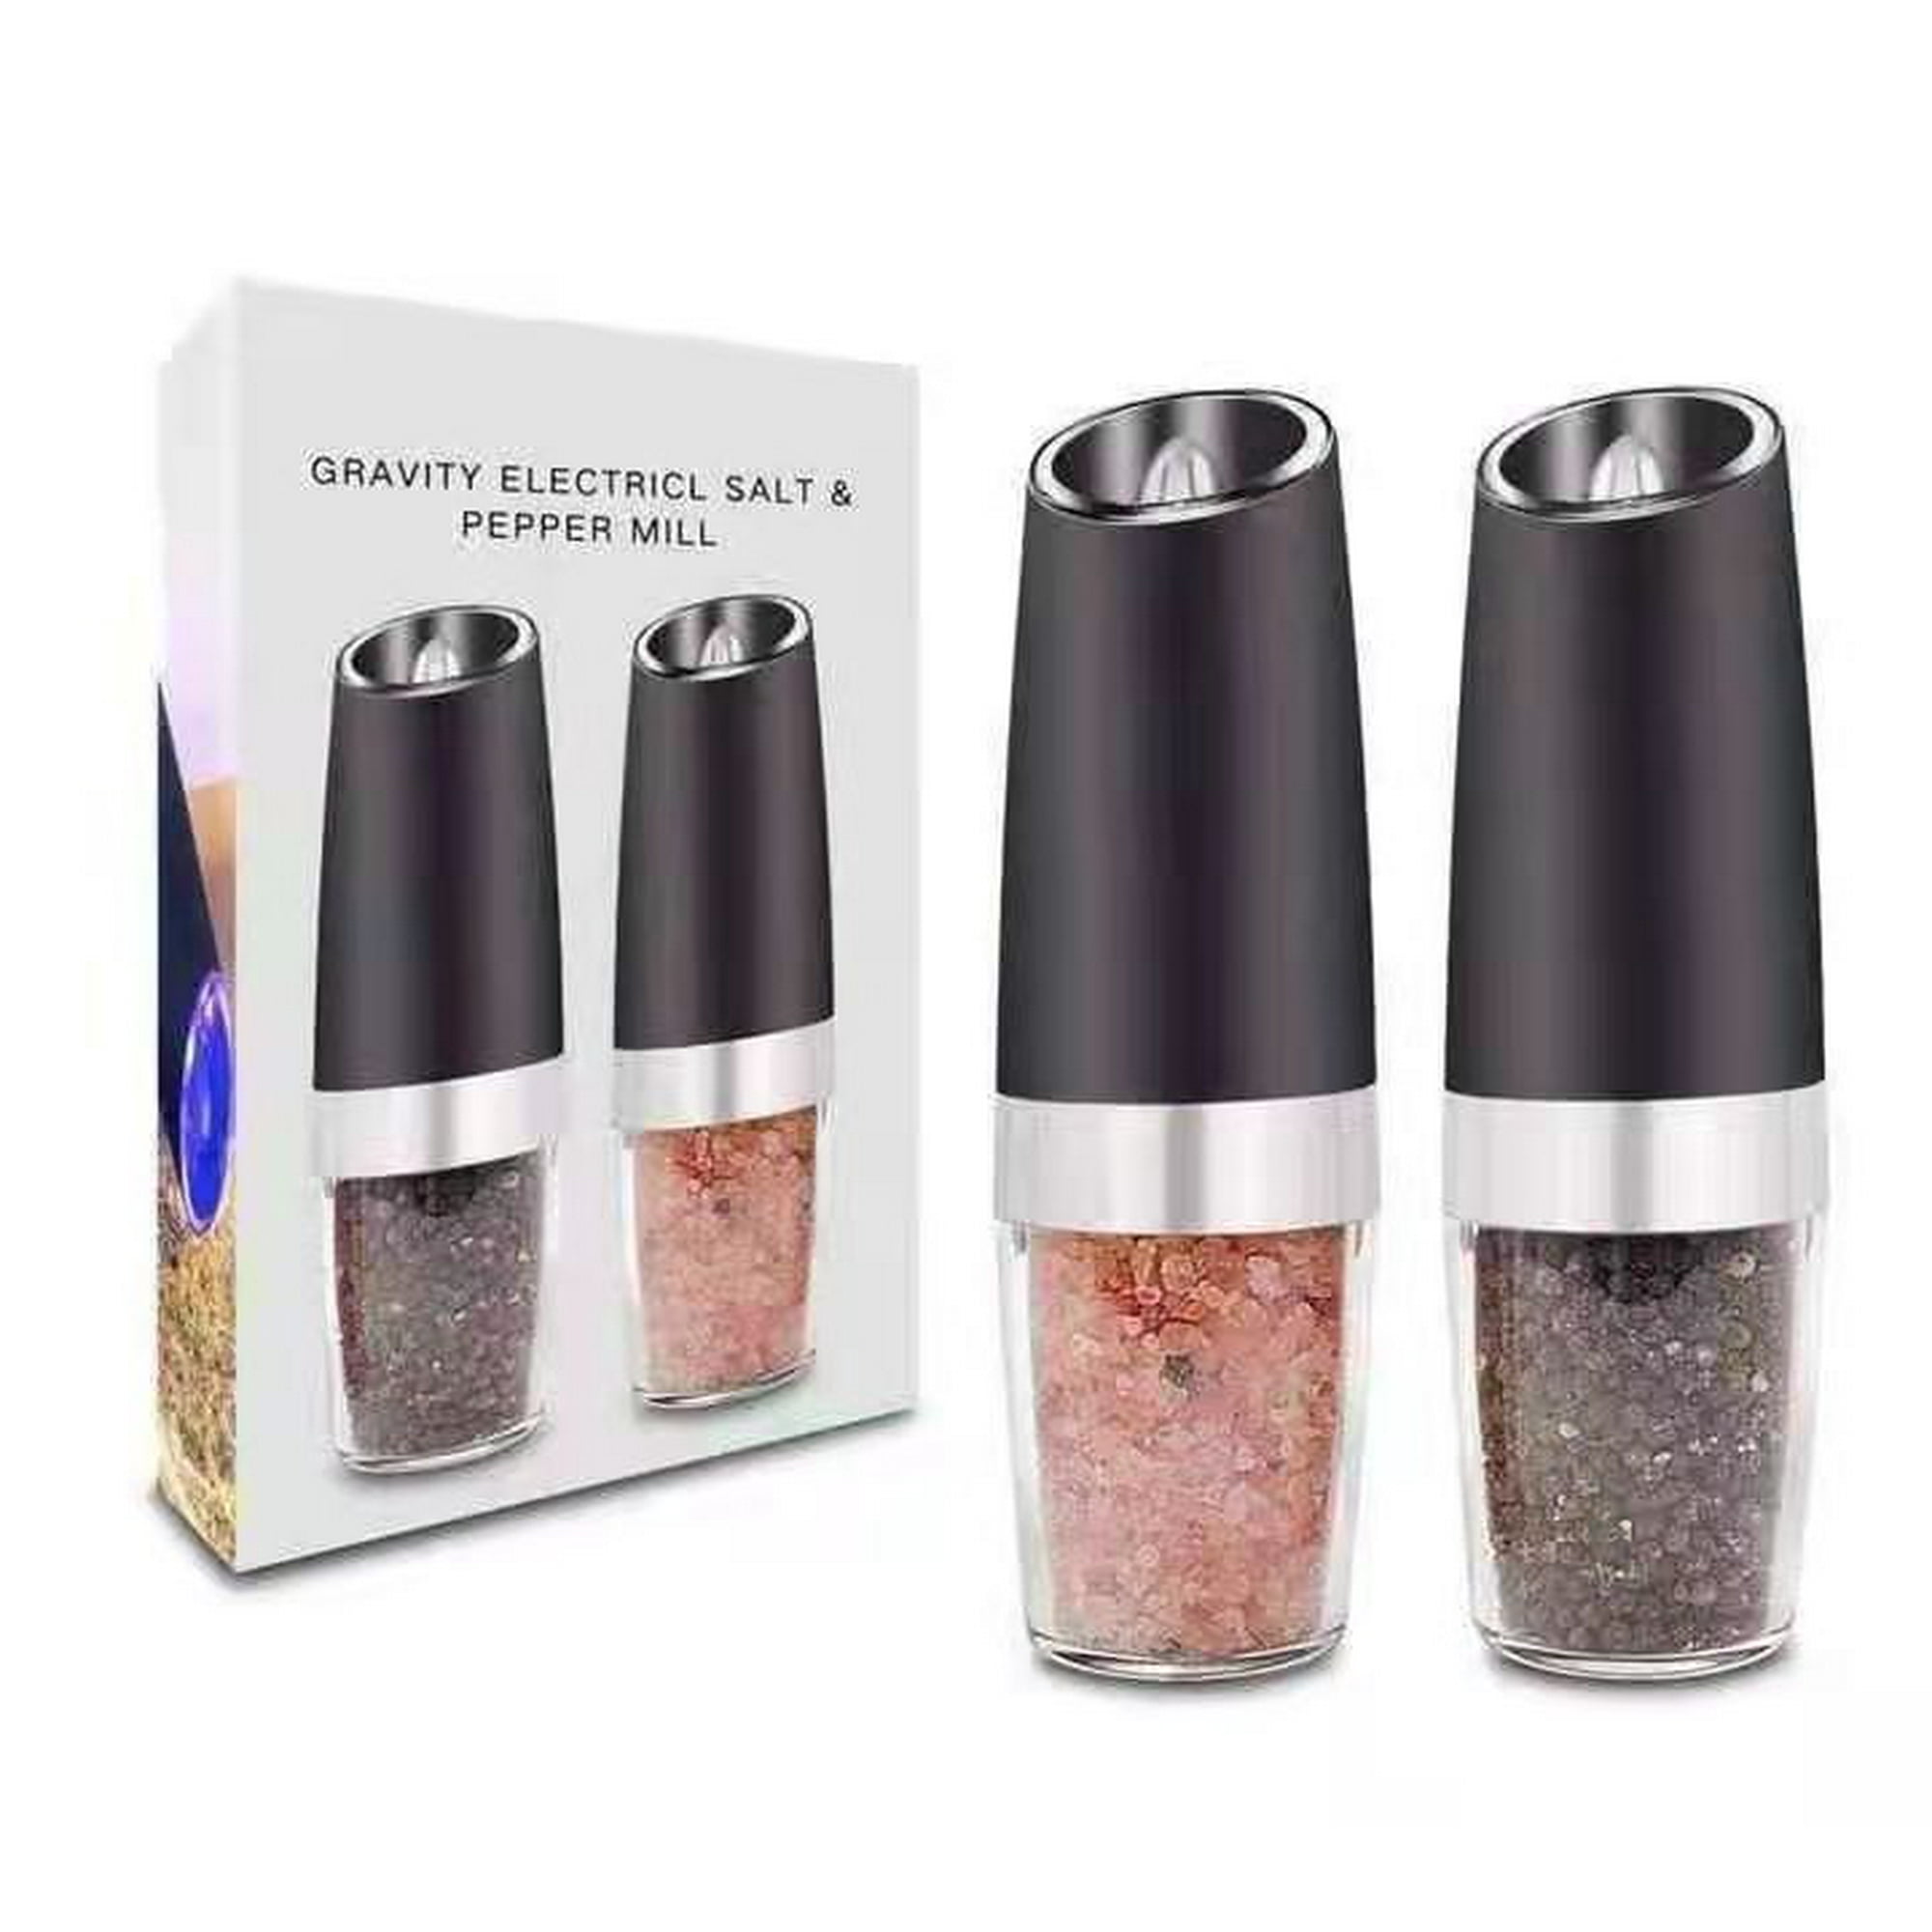 Gravity - Molinillo eléctrico de sal y pimienta, molinillo automático de  sal y pimienta, funciona con pilas con luz LED blanca, grosor ajustable